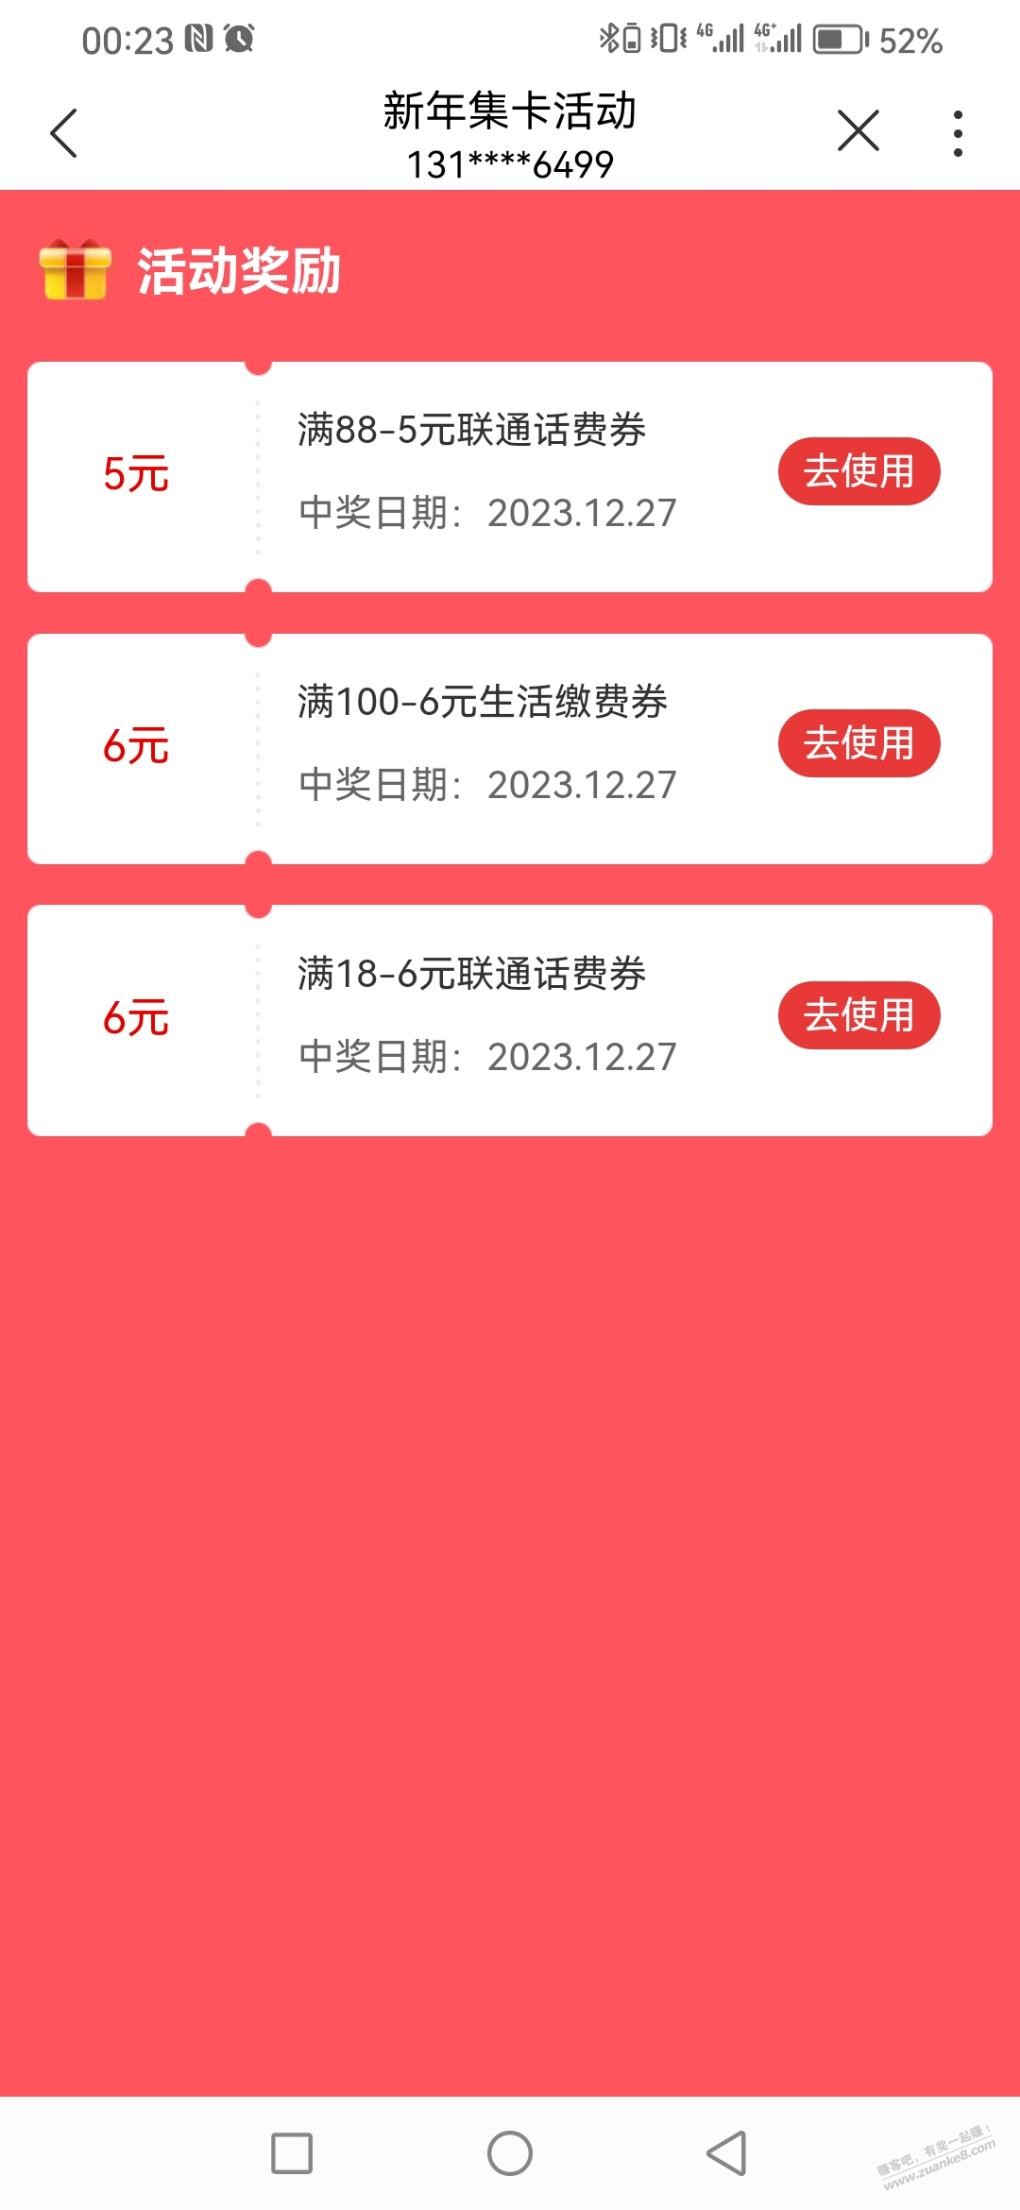 联通沃钱包-弹窗-新年集卡有水-惠小助(52huixz.com)